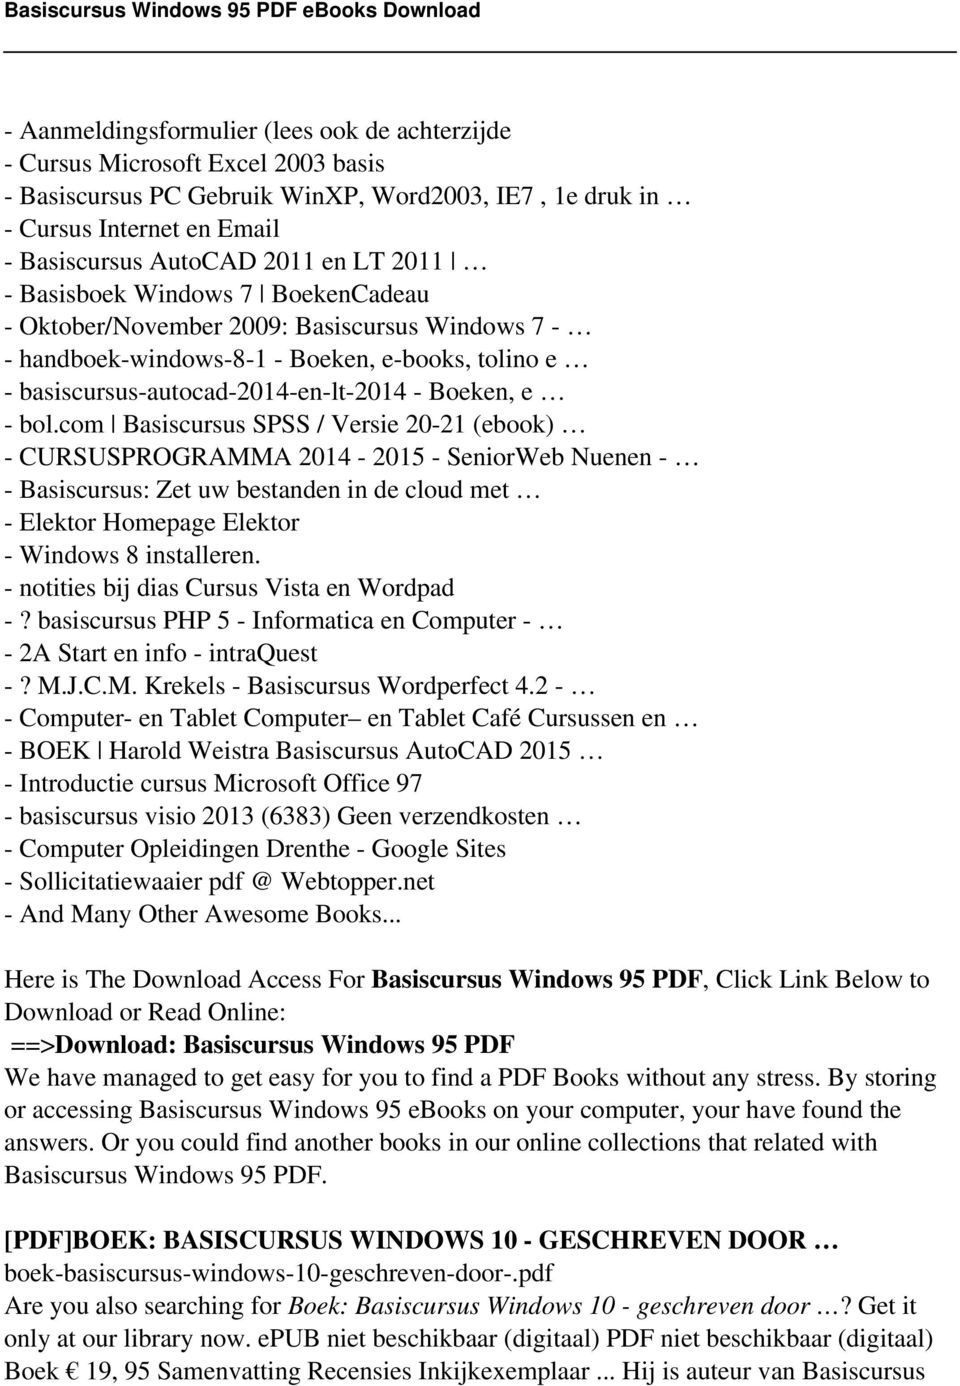 com Basiscursus SPSS / Versie 20-21 (ebook) - CURSUSPROGRAMMA 2014-2015 - SeniorWeb Nuenen - - Basiscursus: Zet uw bestanden in de cloud met - Elektor Homepage Elektor - Windows 8 installeren.